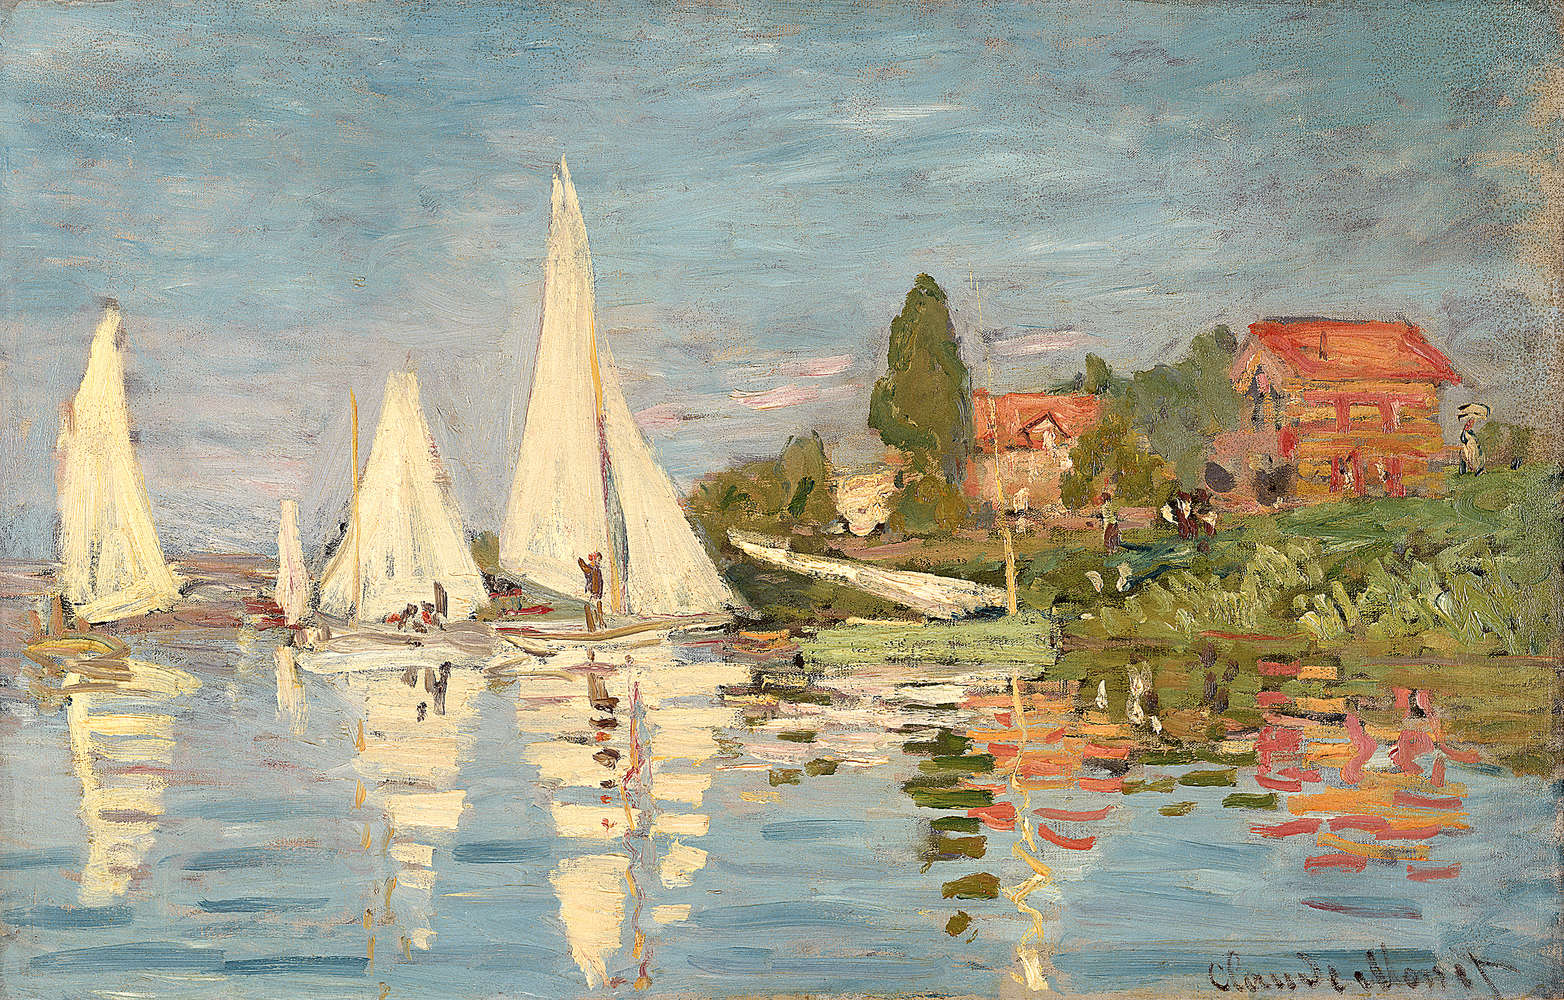             Papier peint panoramique "Danaé" de Claude Monet
        